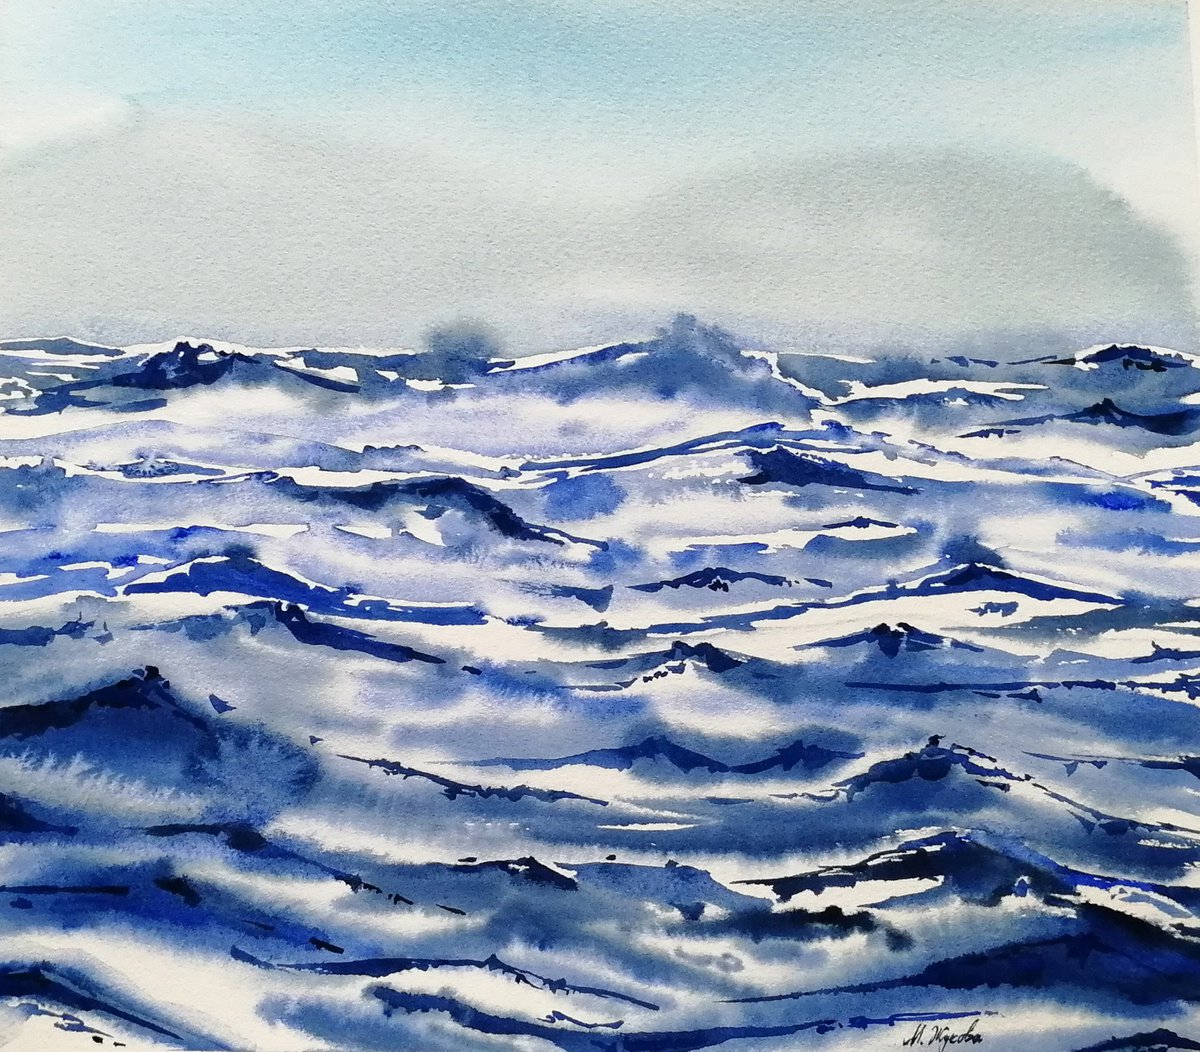 Abstract Seascape painting by Marina Zhukova